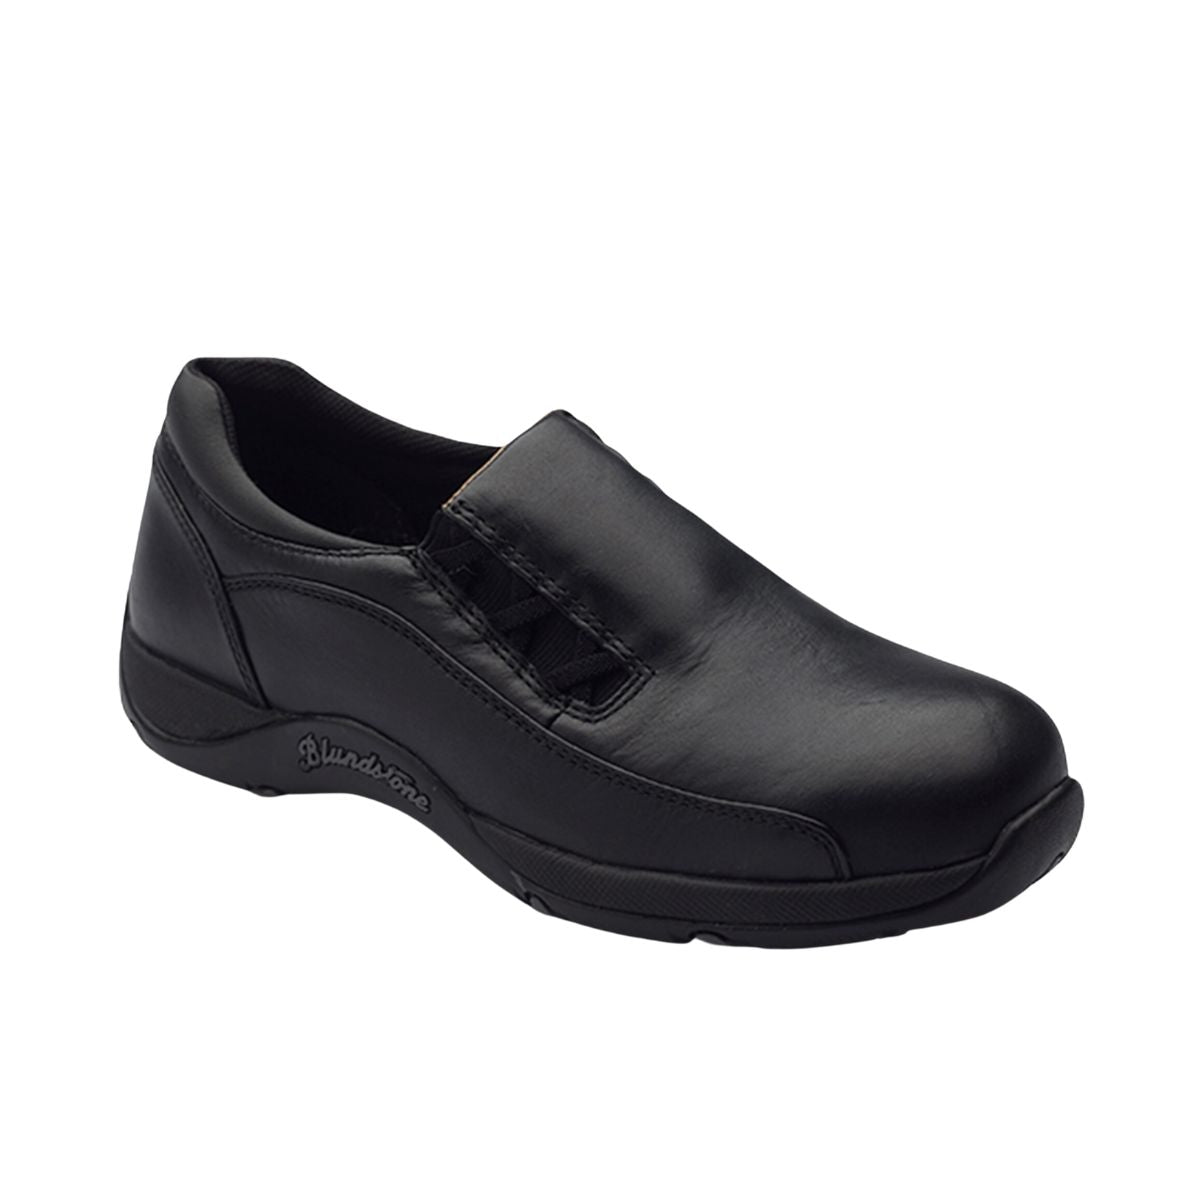 Blundstone Women's Slip On Shoes #743 Size 7